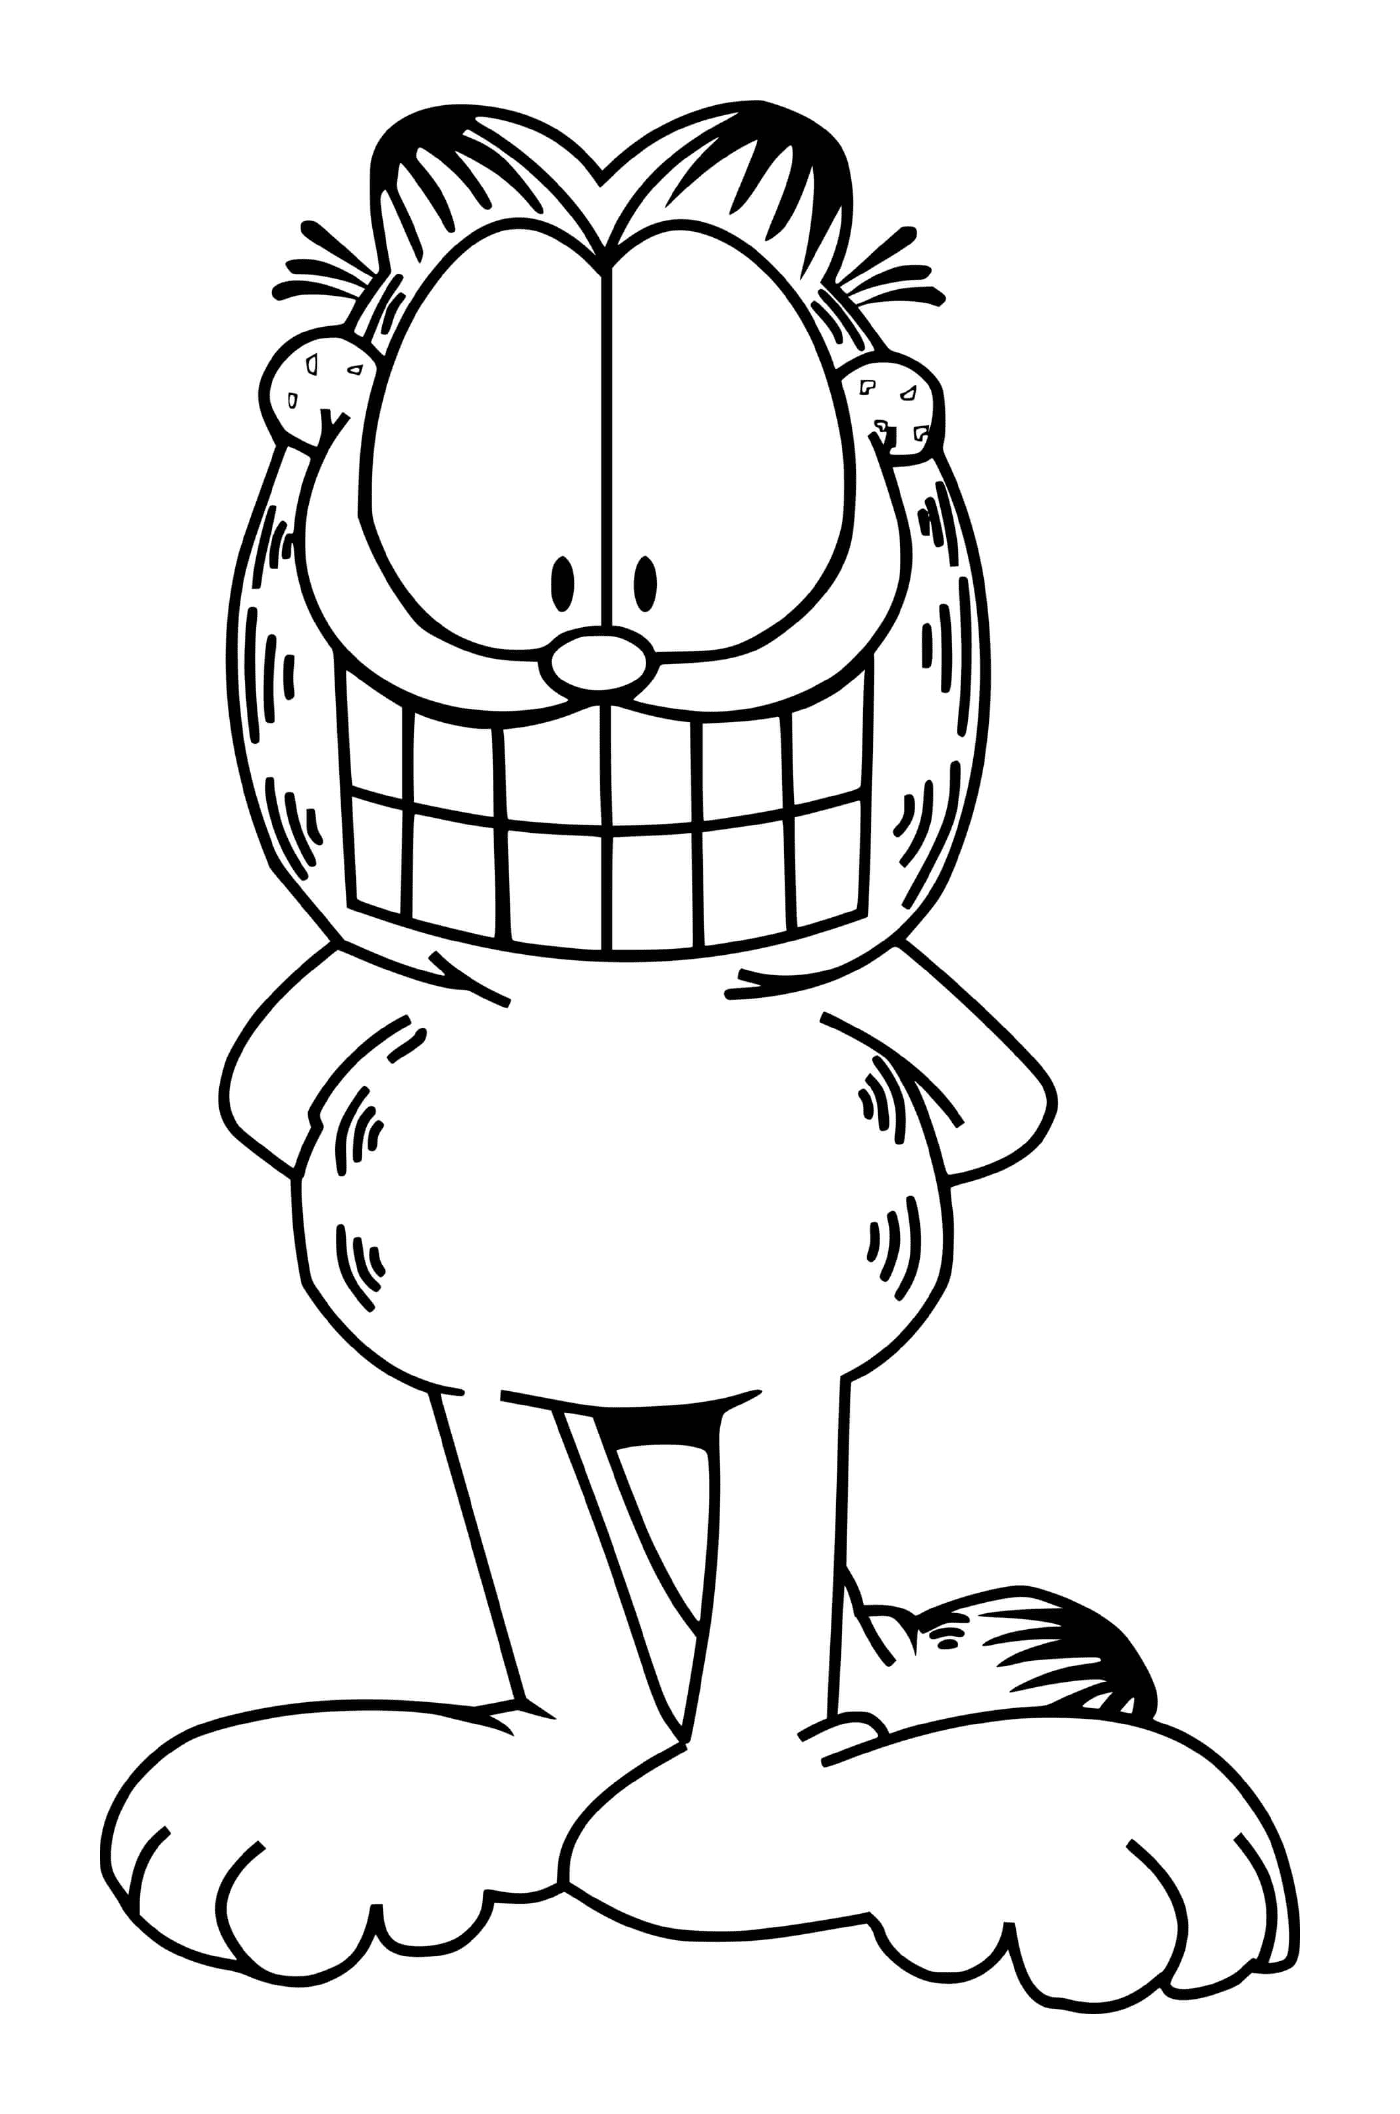  Garfield zeigt ein großes Lächeln 